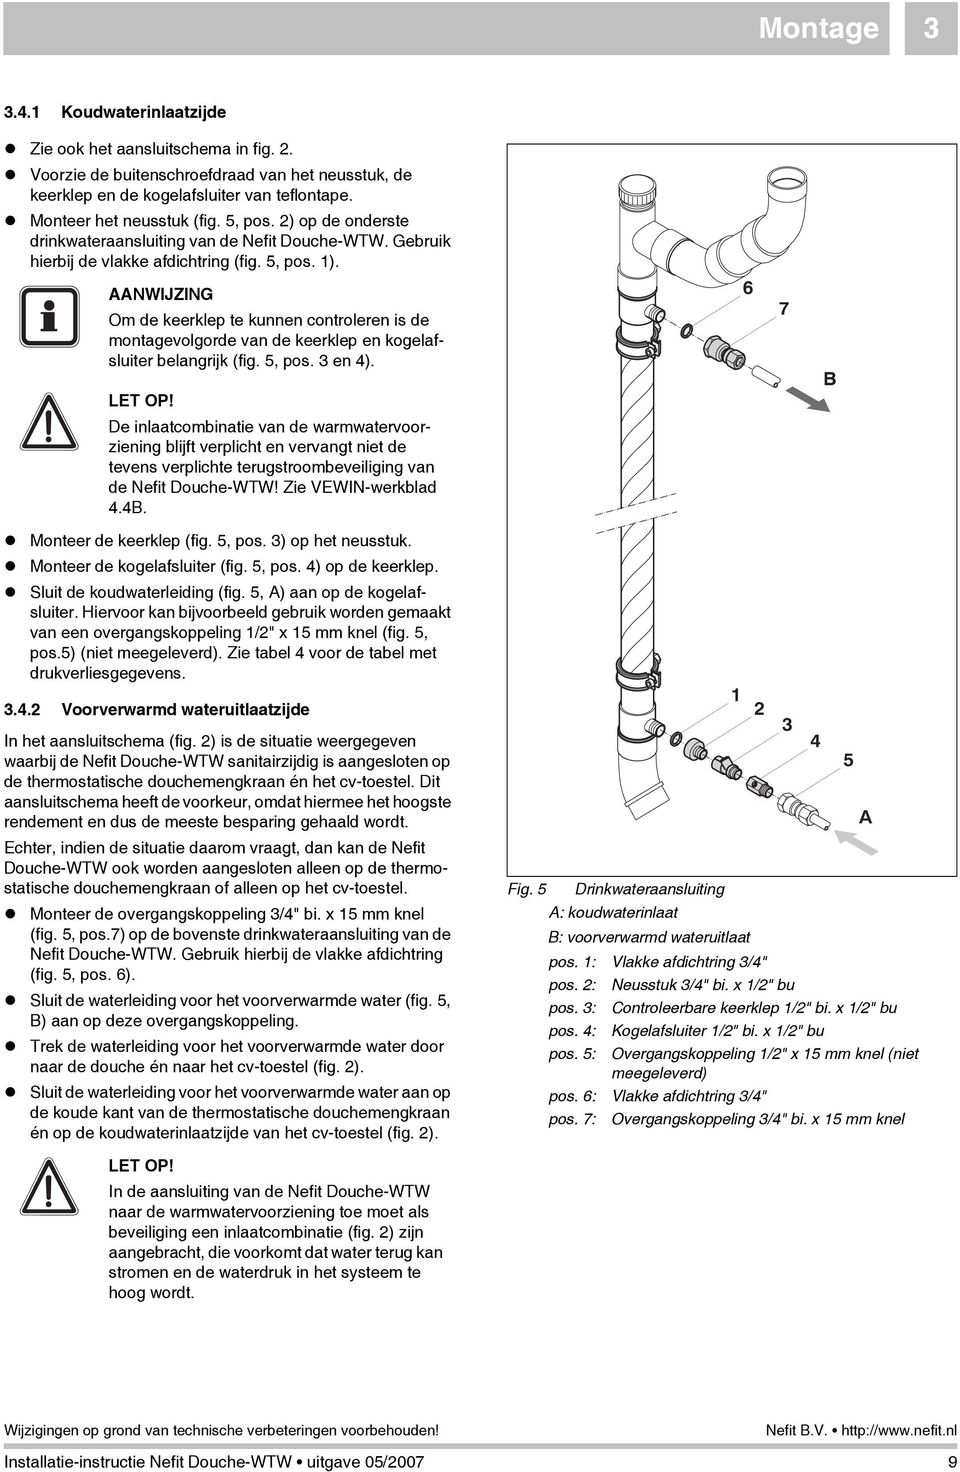 AANWIJZING Om de keerklep te kunnen controleren is de montagevolgorde van de keerklep en kogelafsluiter belangrijk (fig. 5, pos. 3 en 4). LET OP!